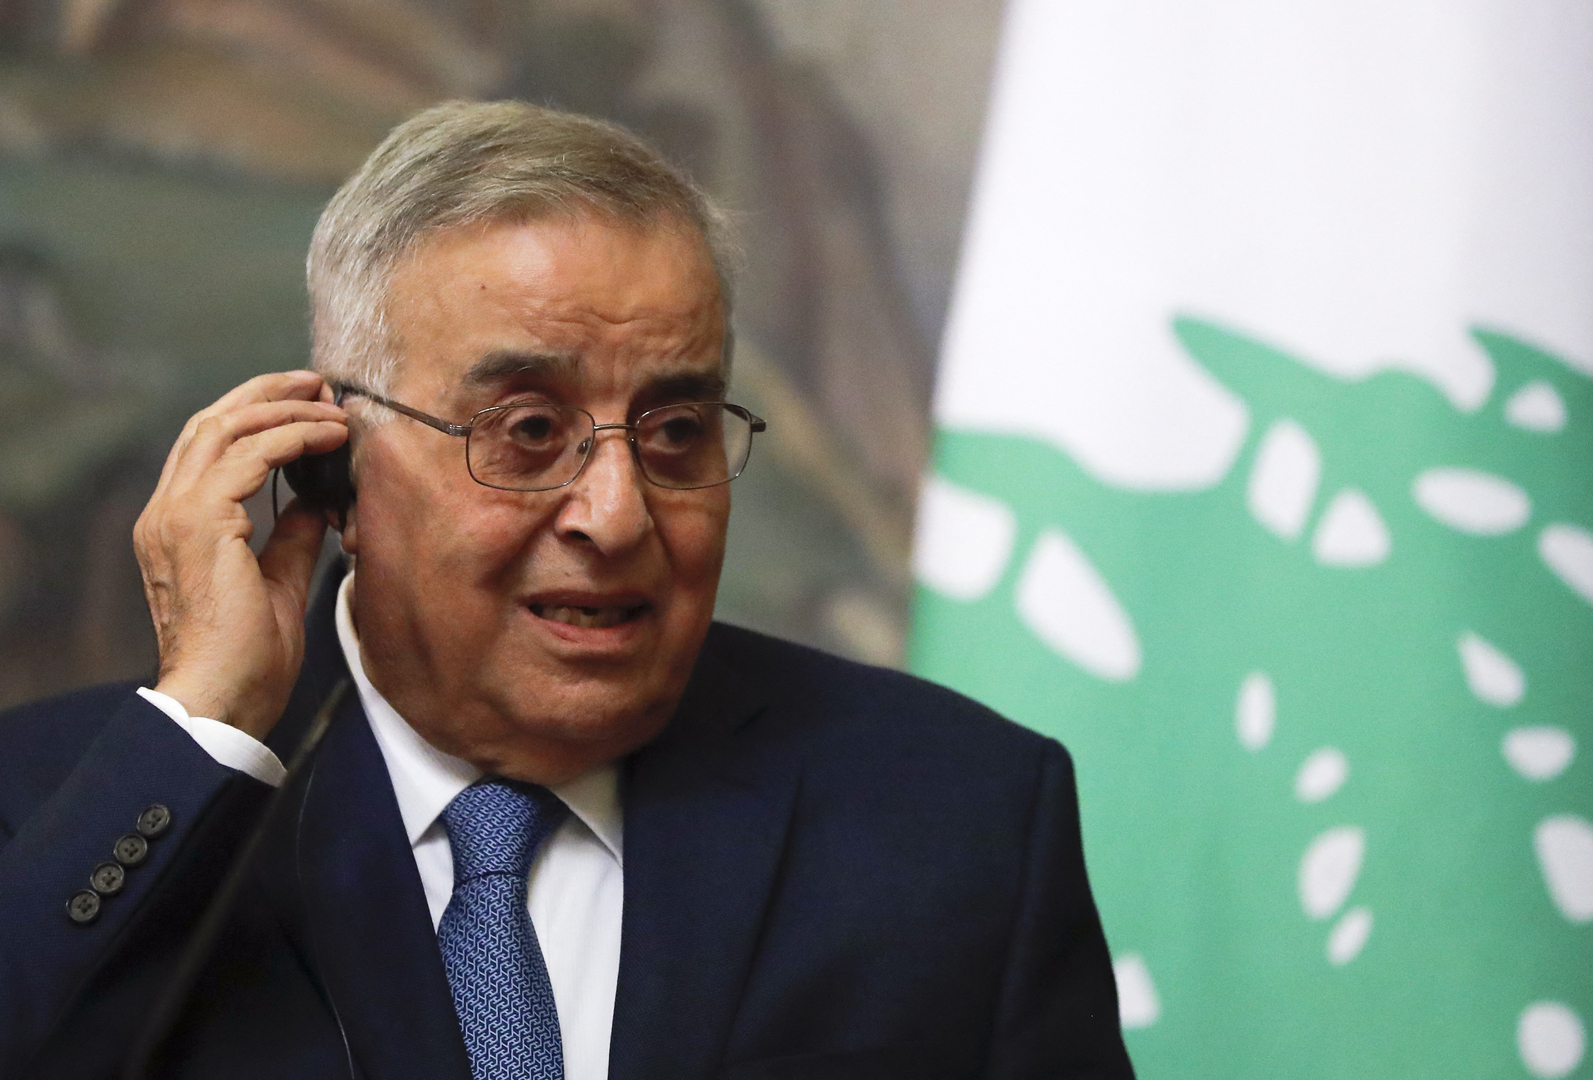 وزير الخارجية اللبناني يتوقع موعد التوصل إلى اتفاق مع إسرائيل في ملف ترسيم الحدود البحرية